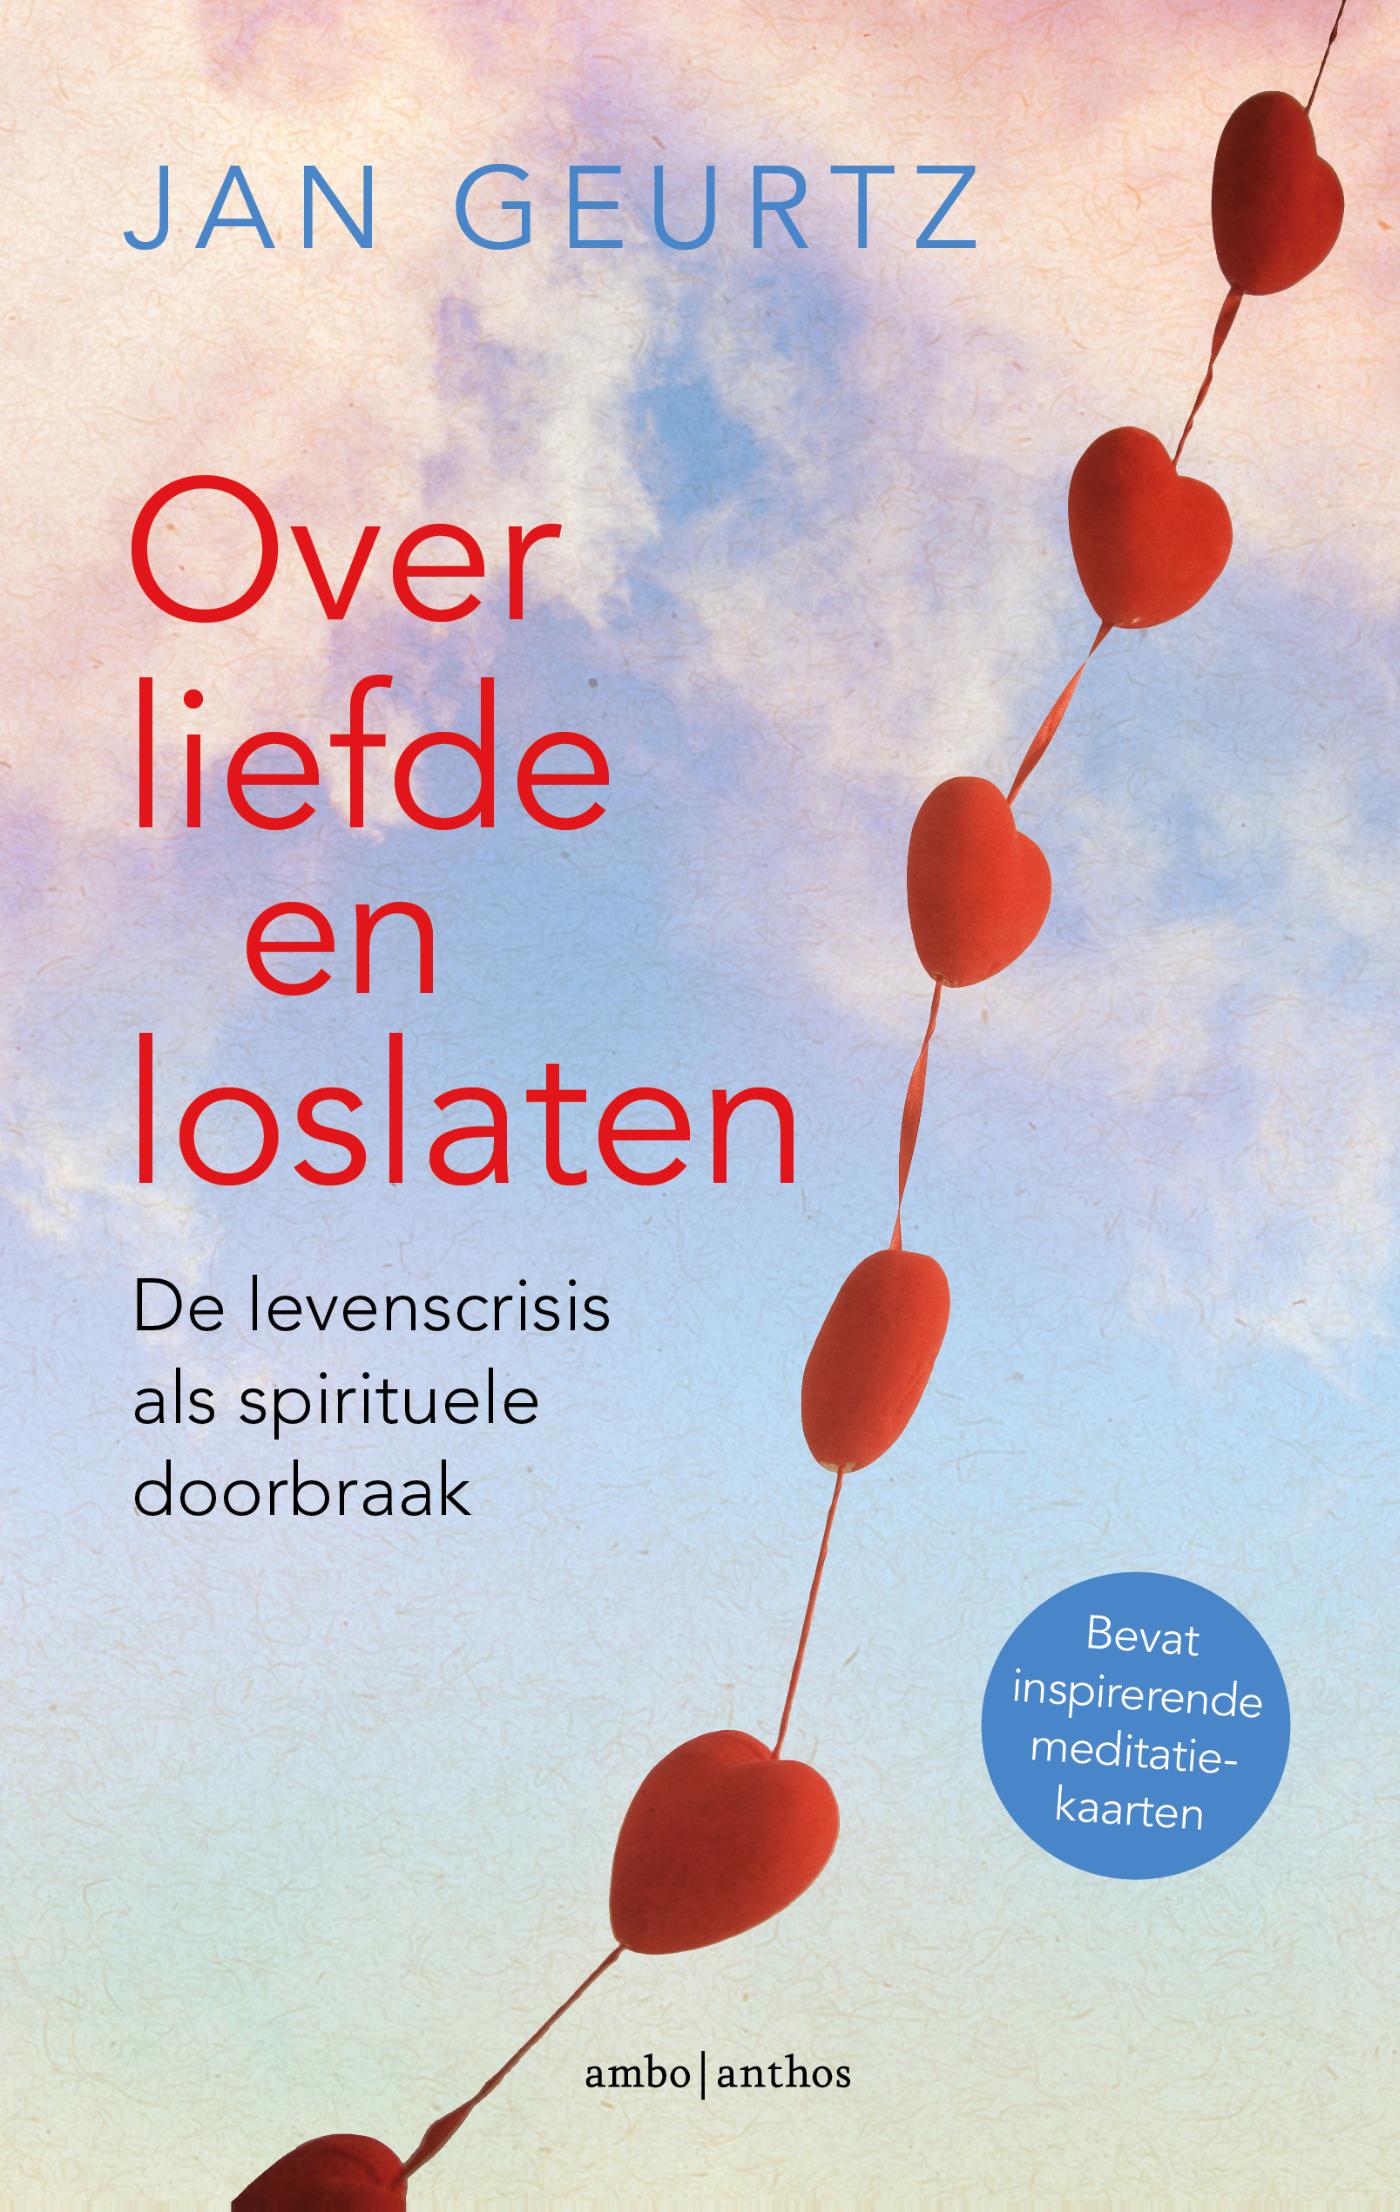 Over liefde en loslaten (Ebook)